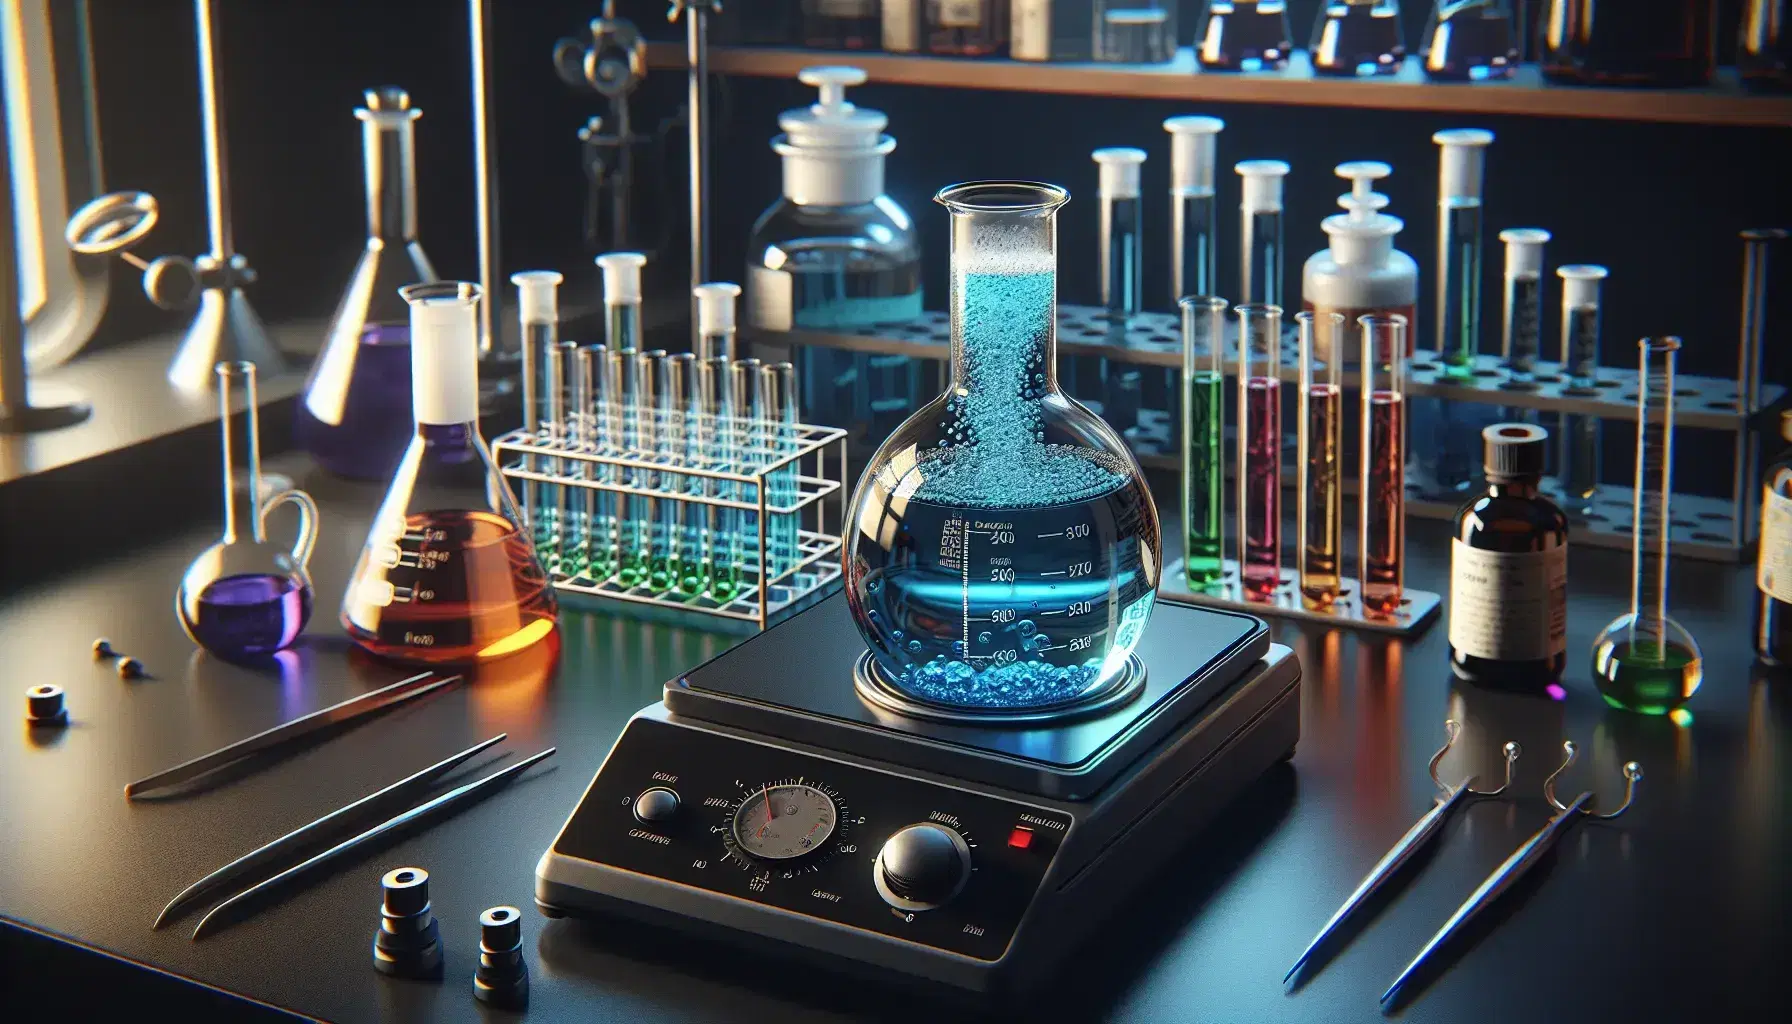 Primer plano de un laboratorio químico con matraz Erlenmeyer y líquido azul burbujeante sobre placa caliente, cilindro graduado amarillo y tubos de ensayo con líquidos de colores.